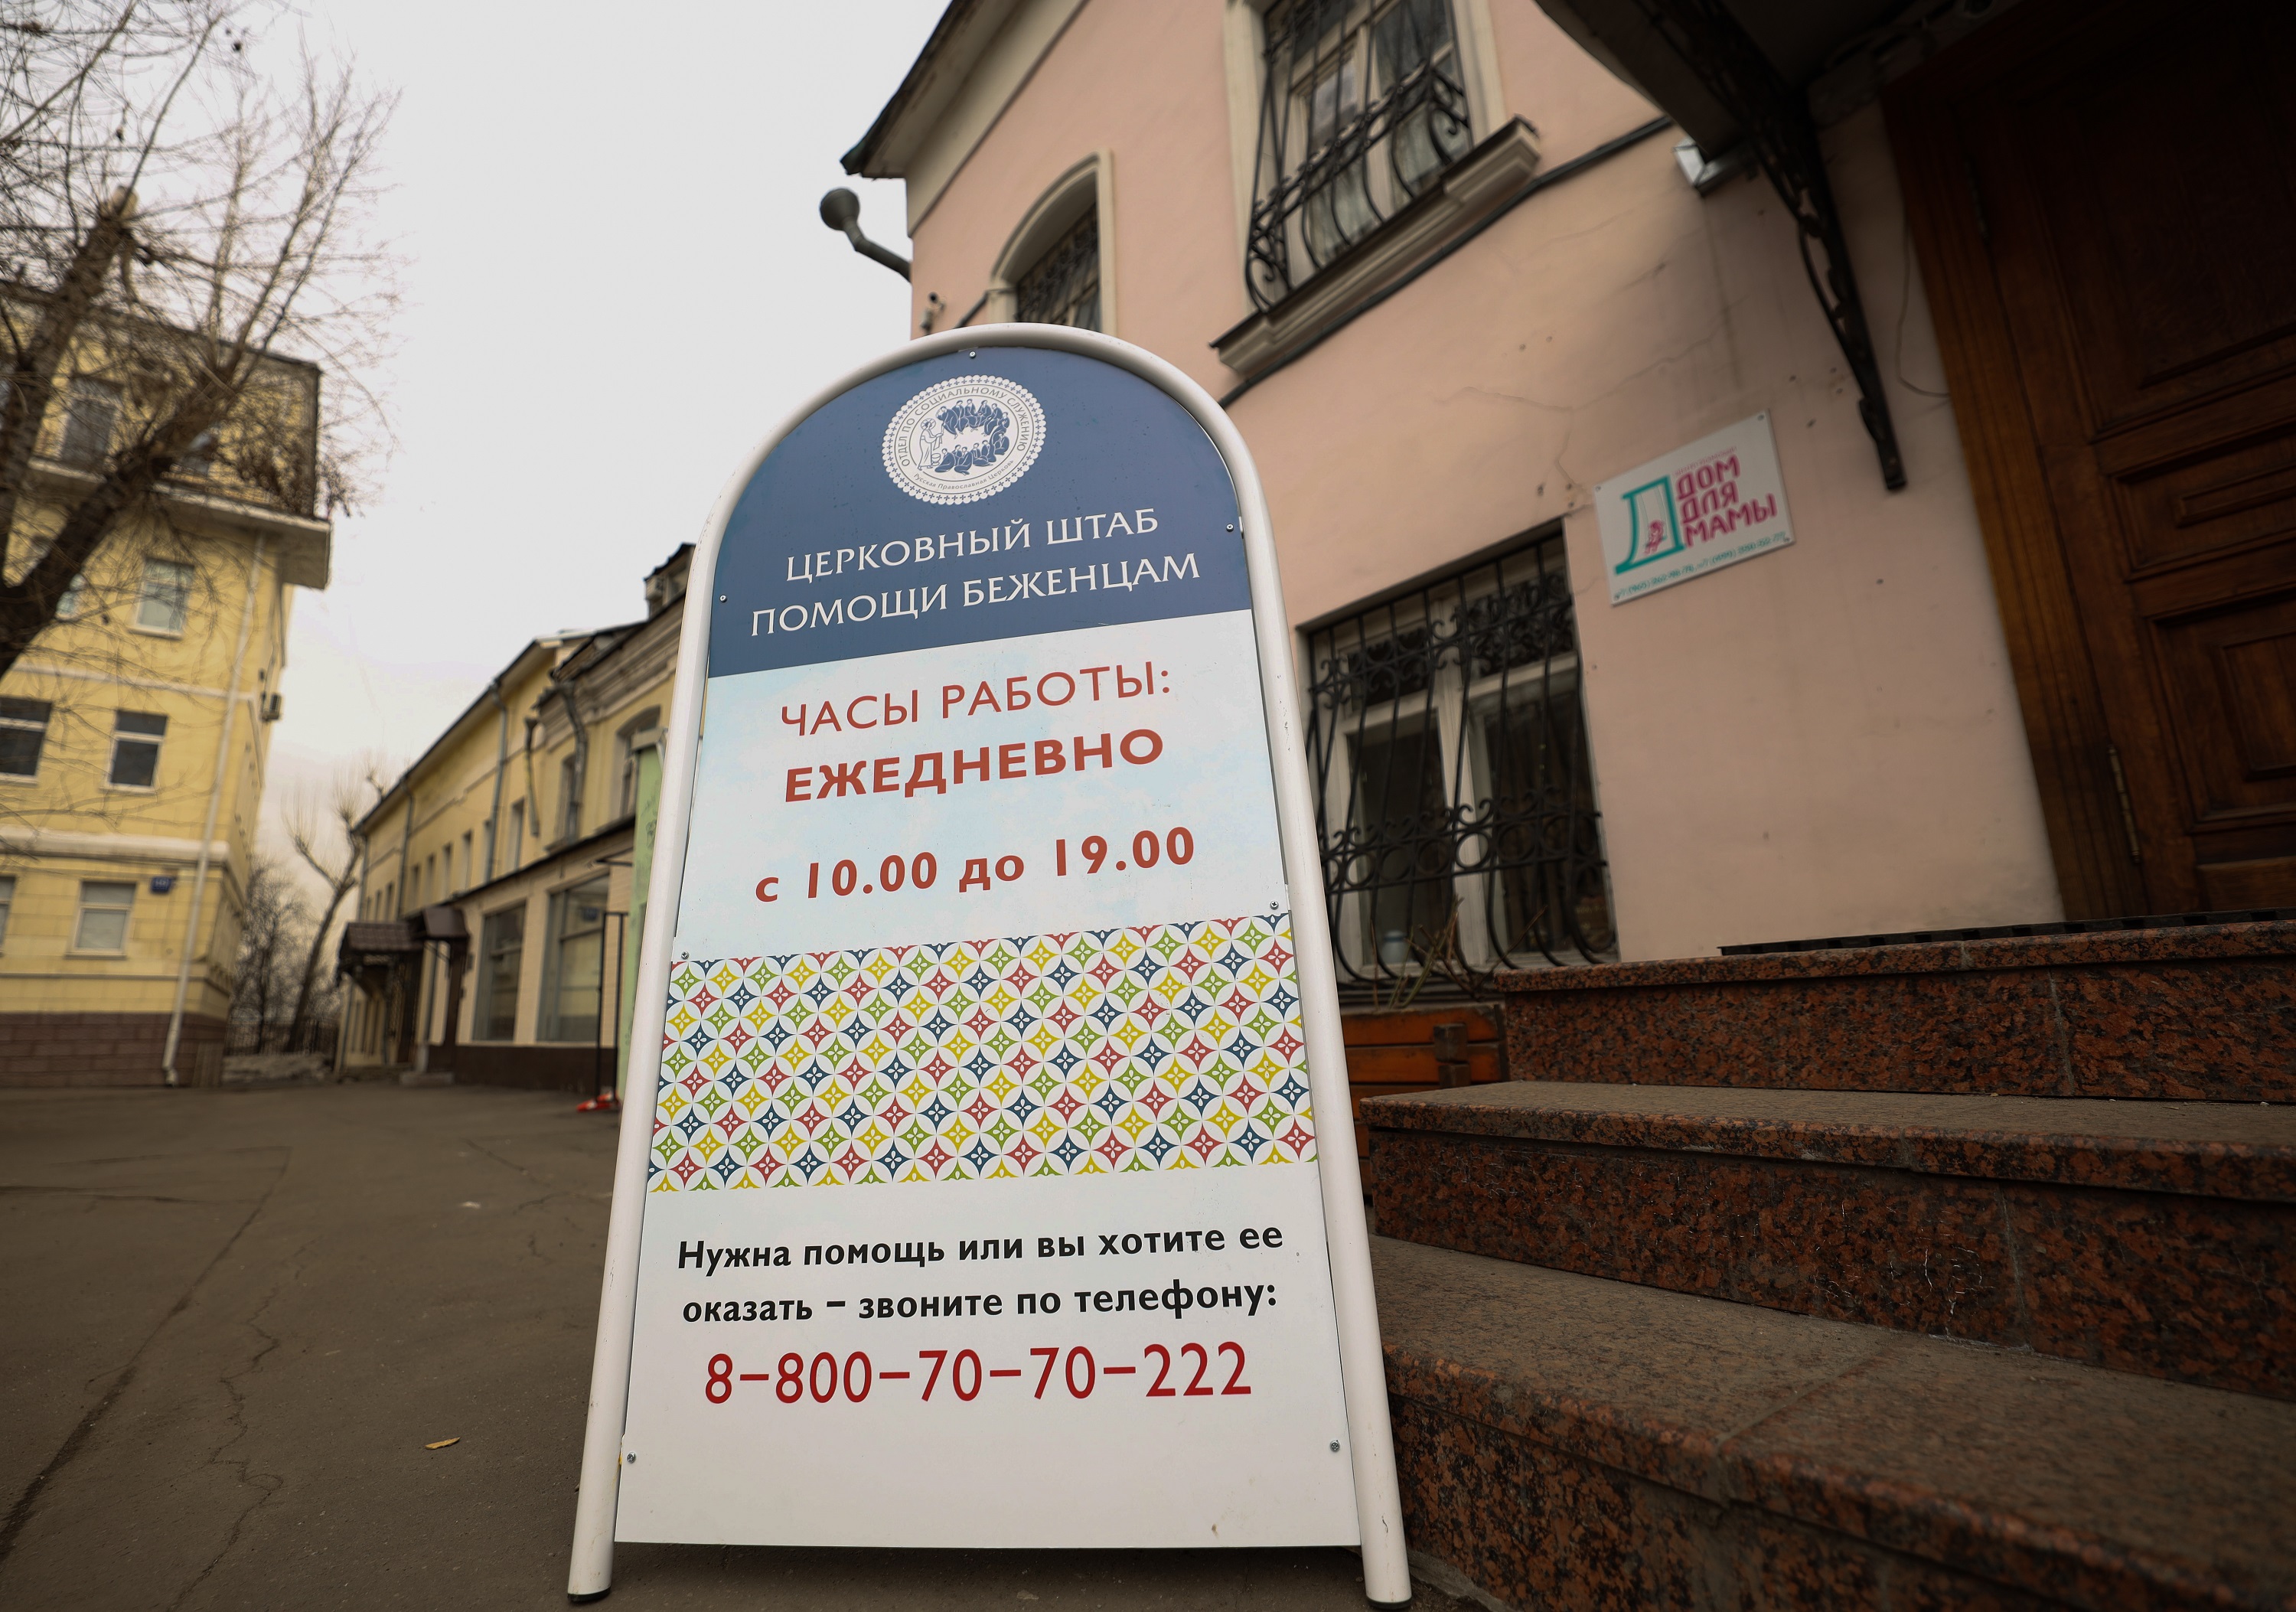 Церковный штаб помощи беженцам в Москве работает ежедневно